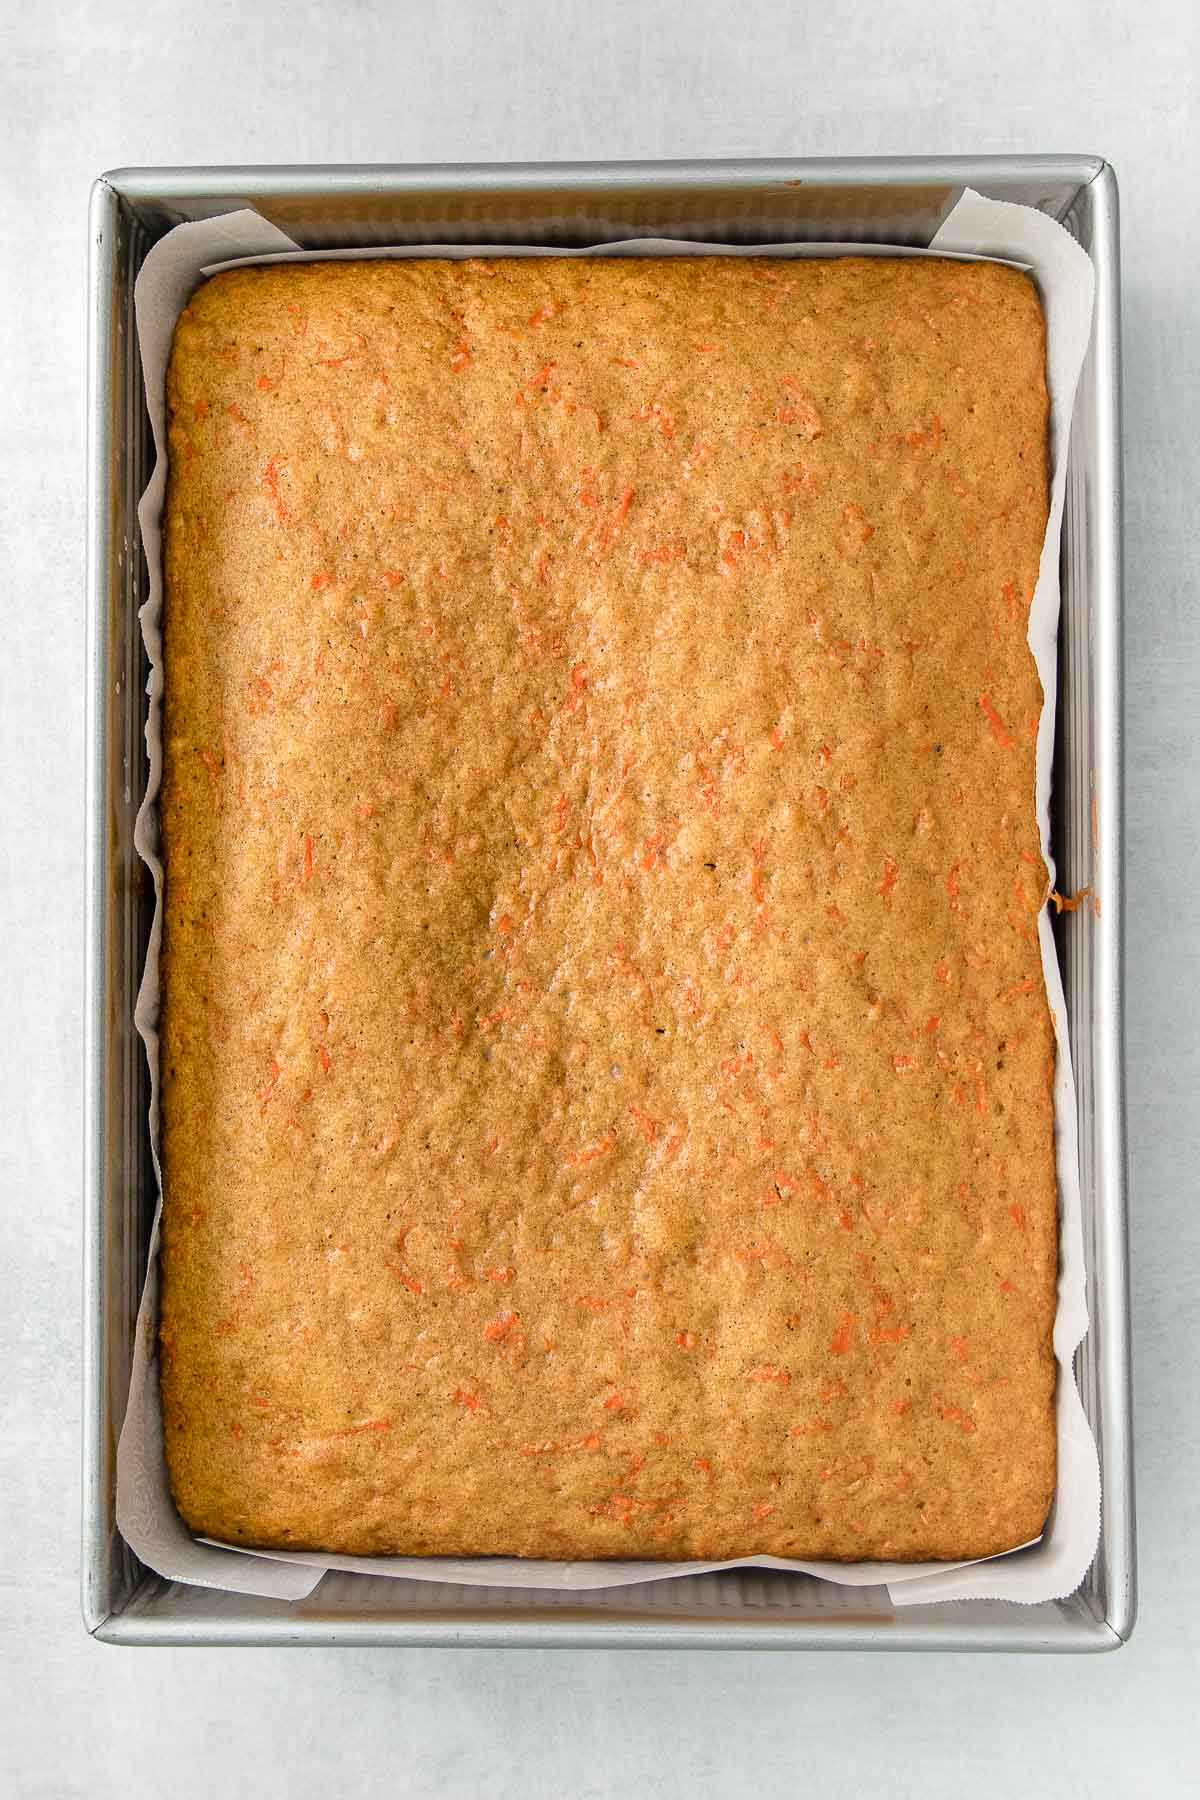 9x13 metal baking dish with sheet pan carrot cake baked.